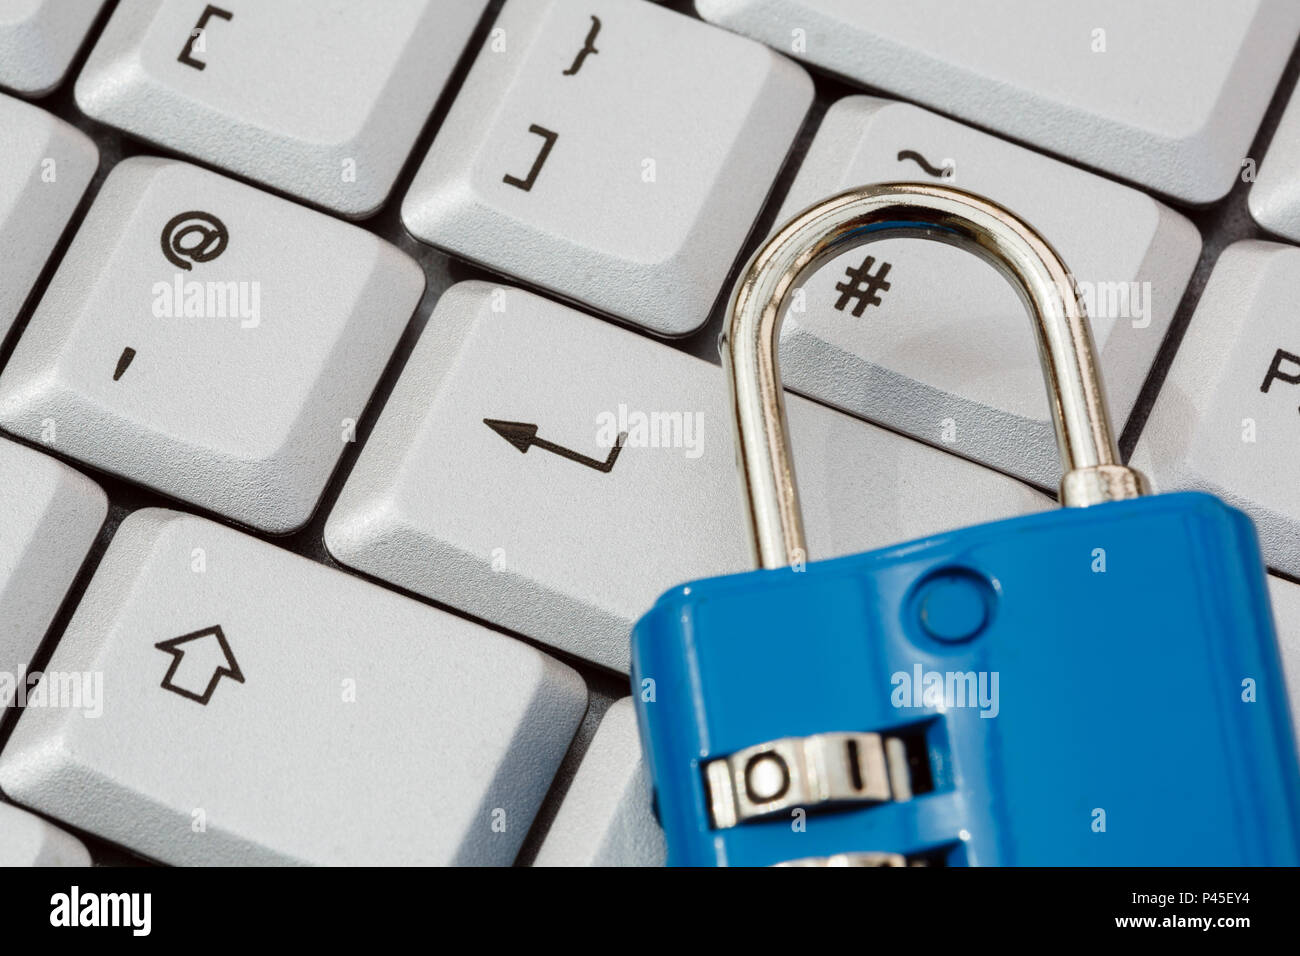 Una tastiera con il tasto invio e un lucchetto per illustrare online cyber security e la protezione dei dati il PILR concetto. Inghilterra Regno Unito Gran Bretagna Foto Stock